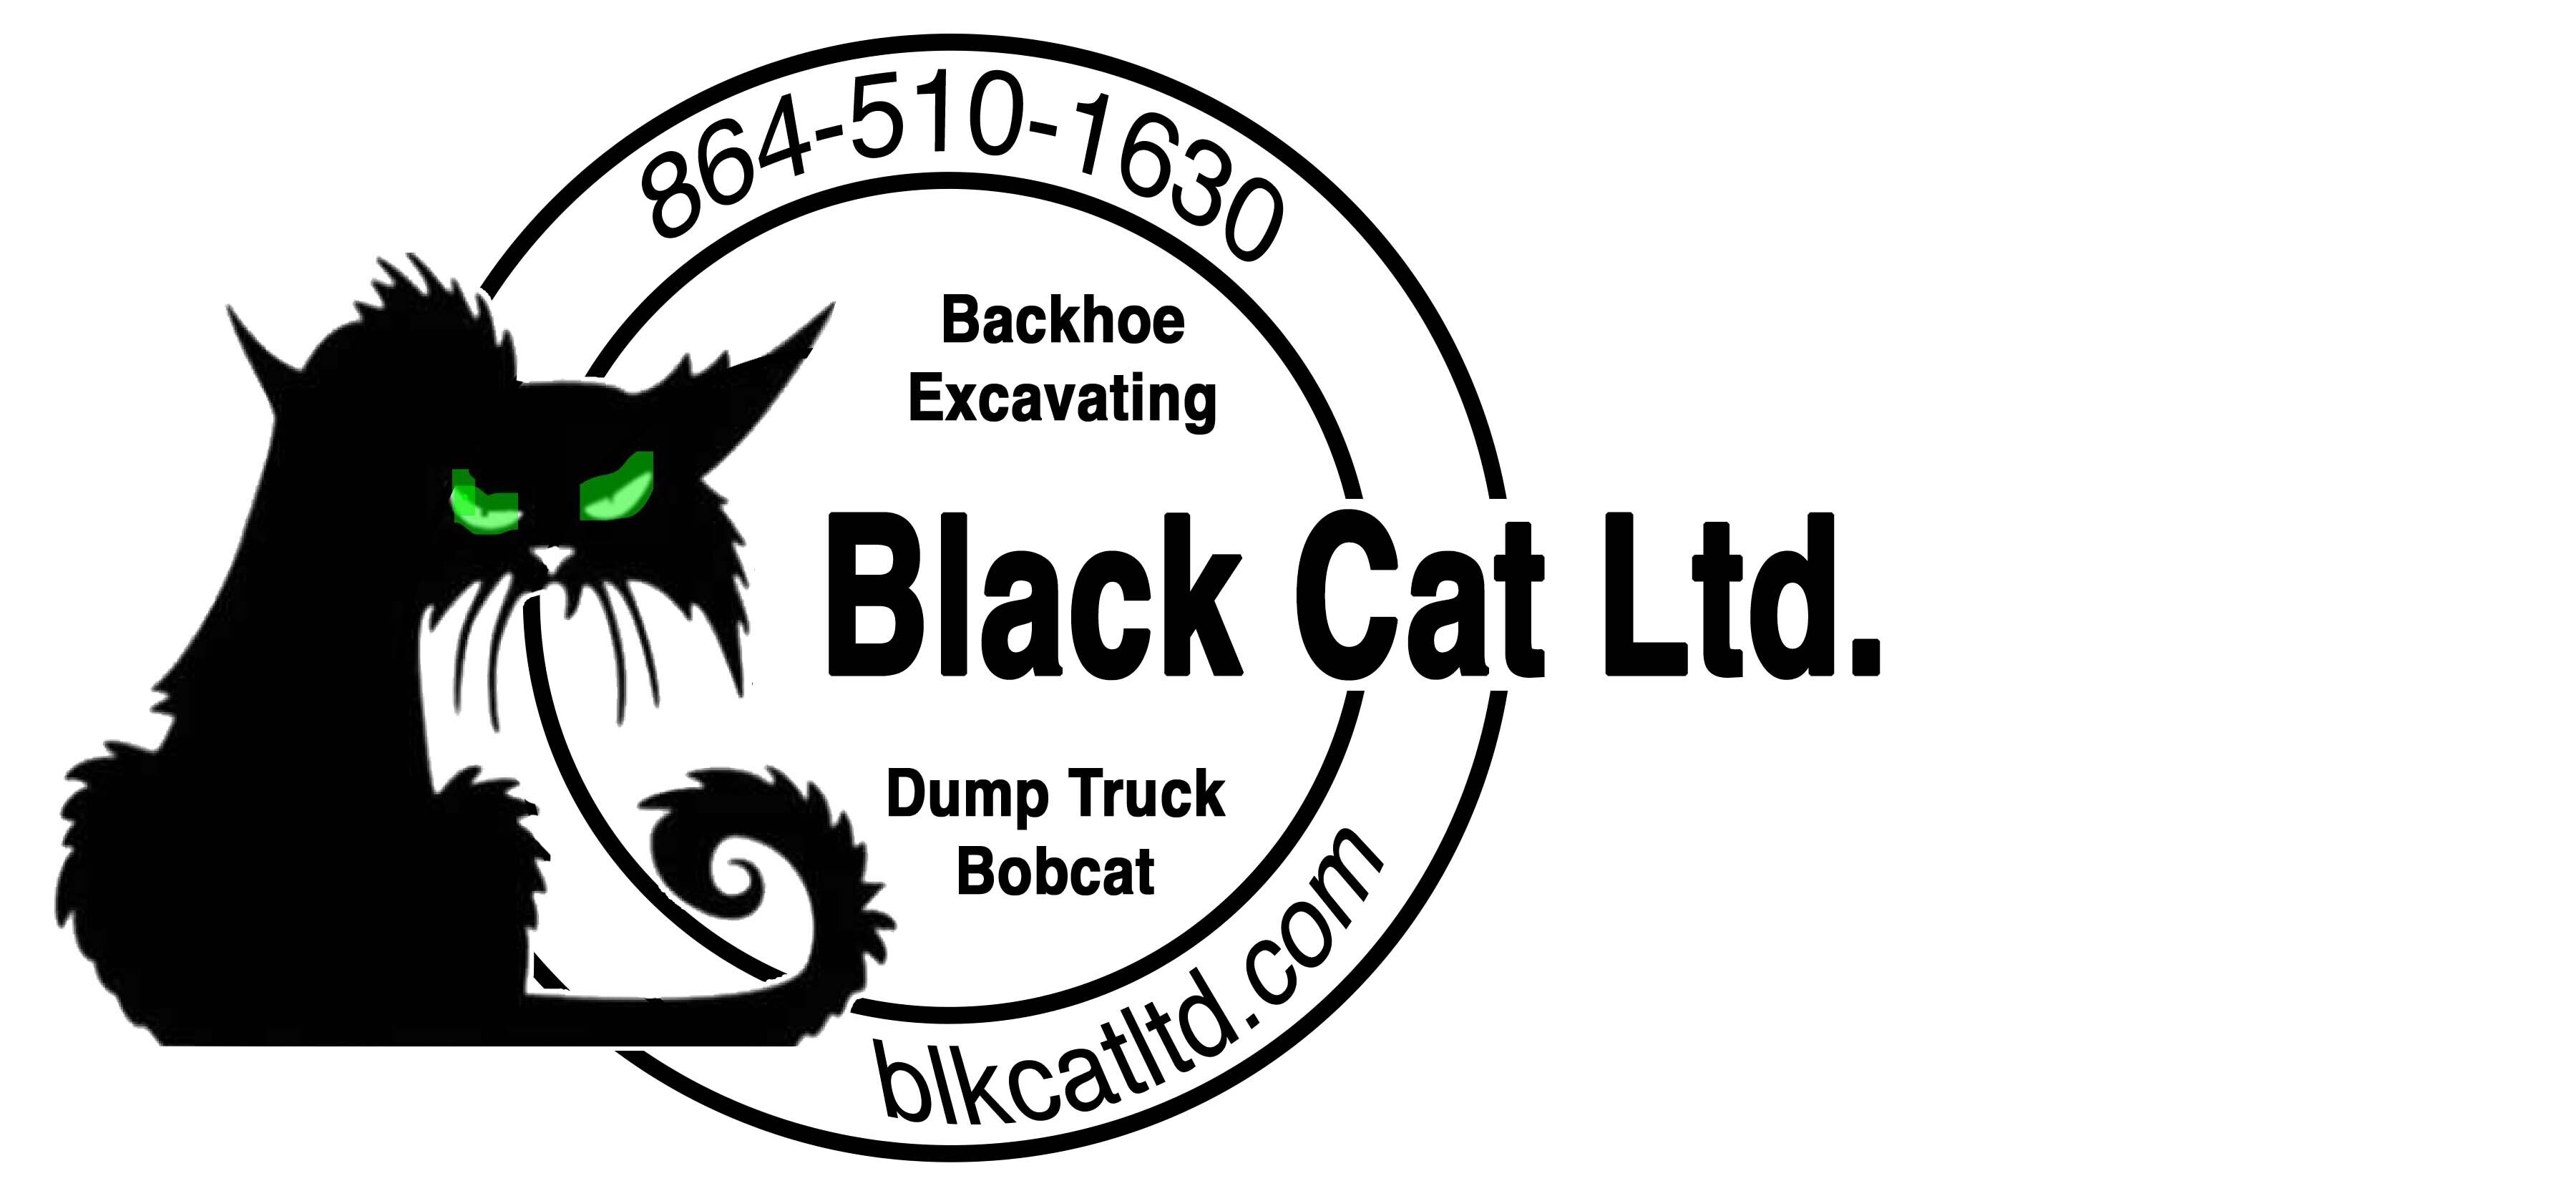 Black Cat Ltd